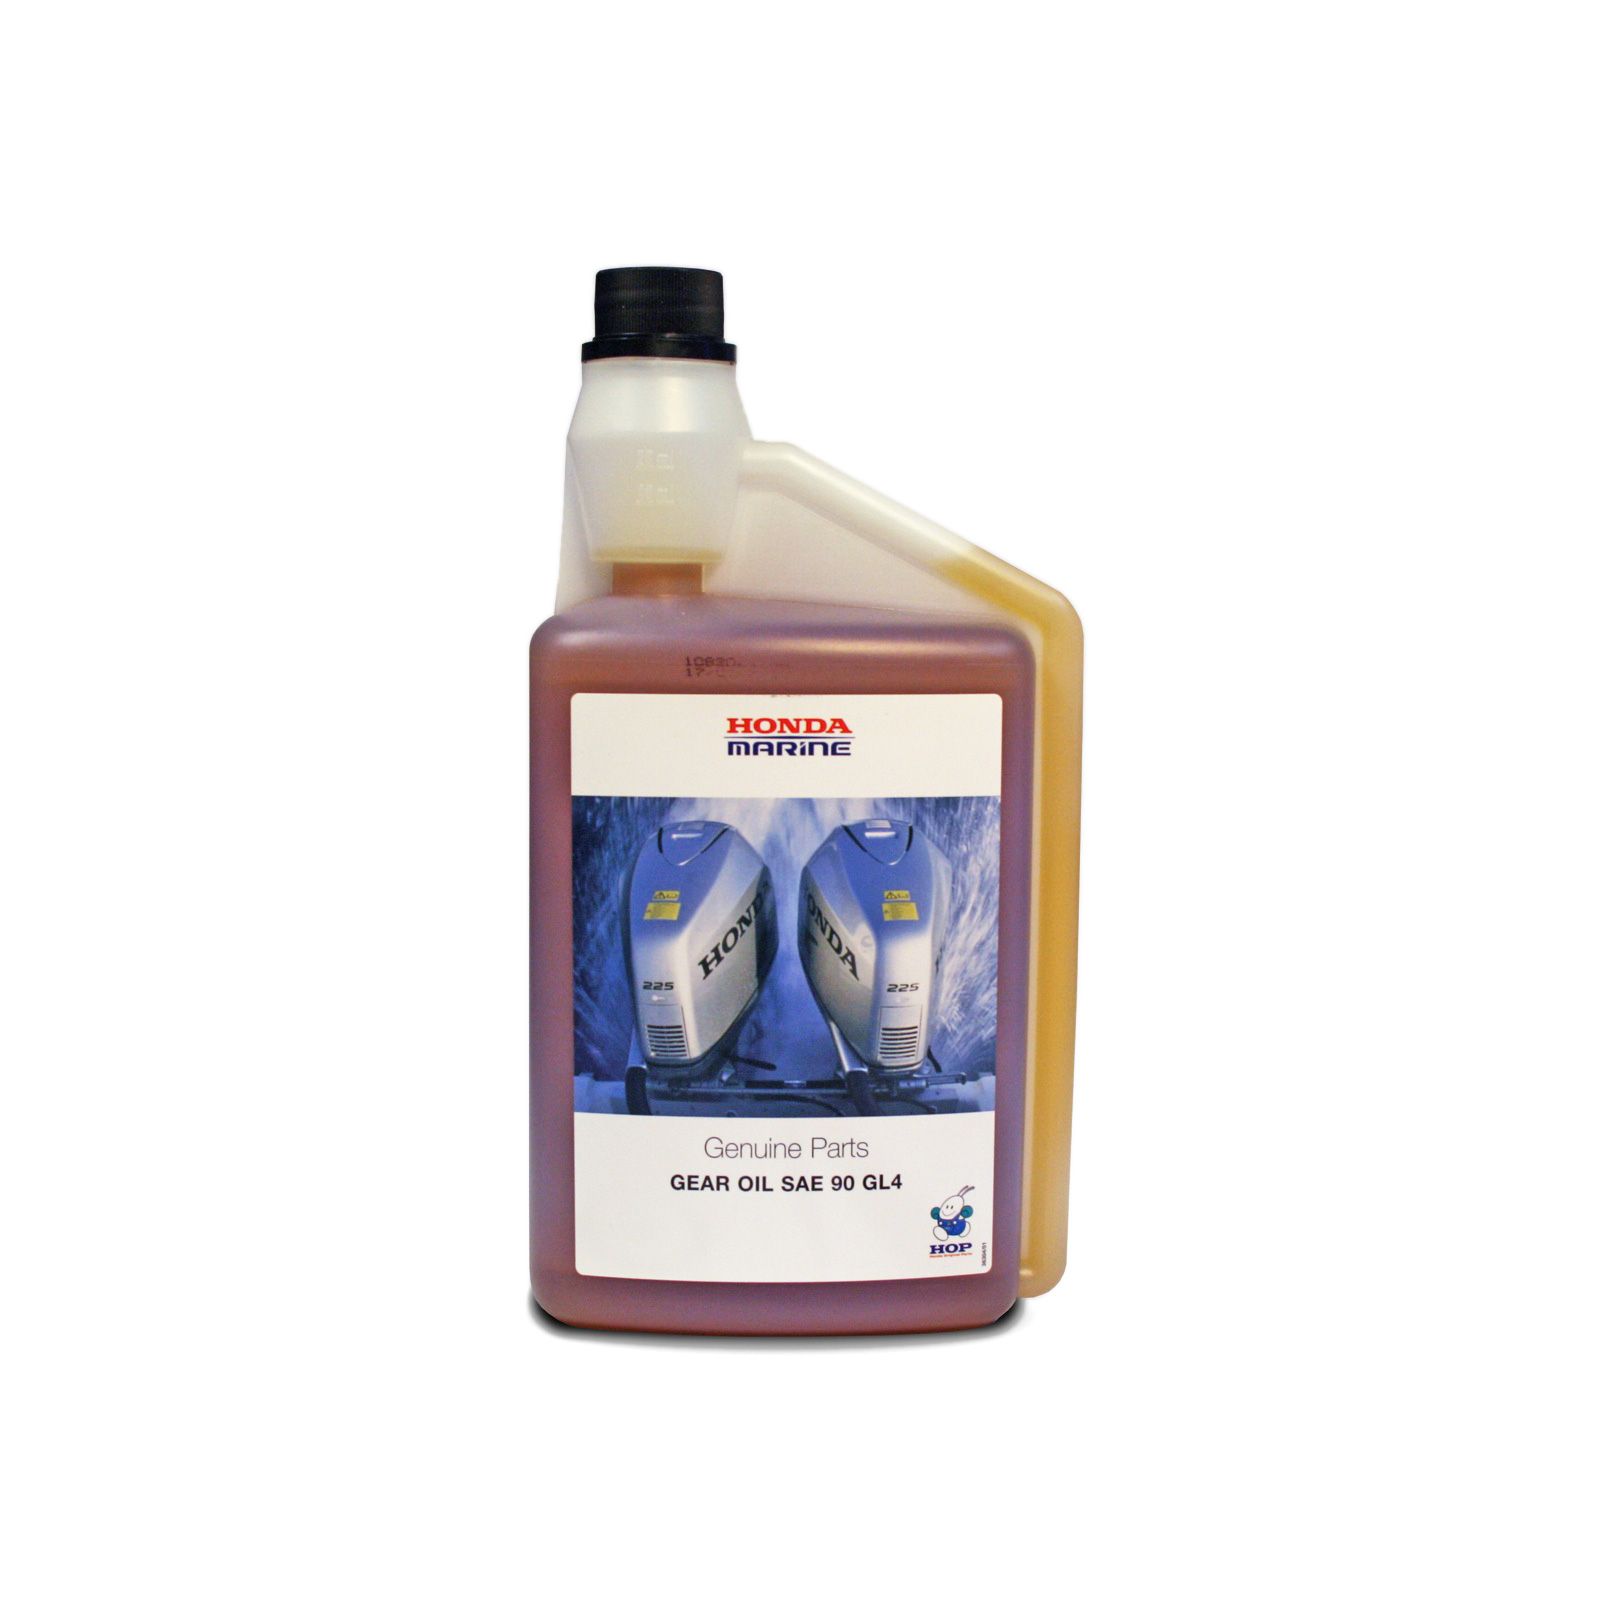 Морское масло для зубчатых передач — SAE 90 GL4. Упаковка — 12 бутылки объемом 1 литр